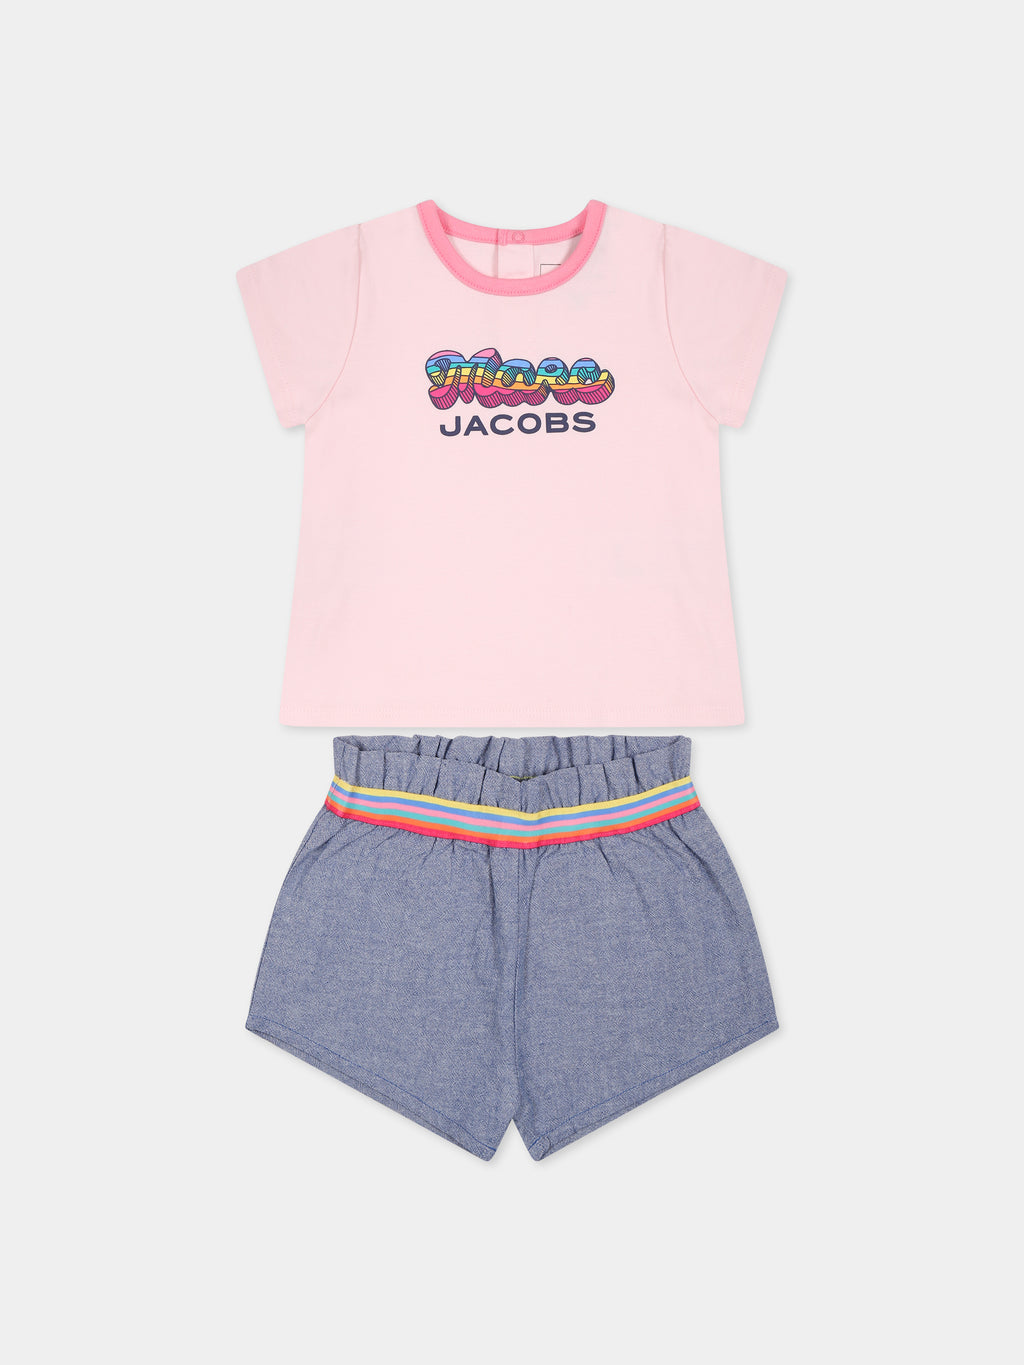 Completo multicolor per neonata con logo